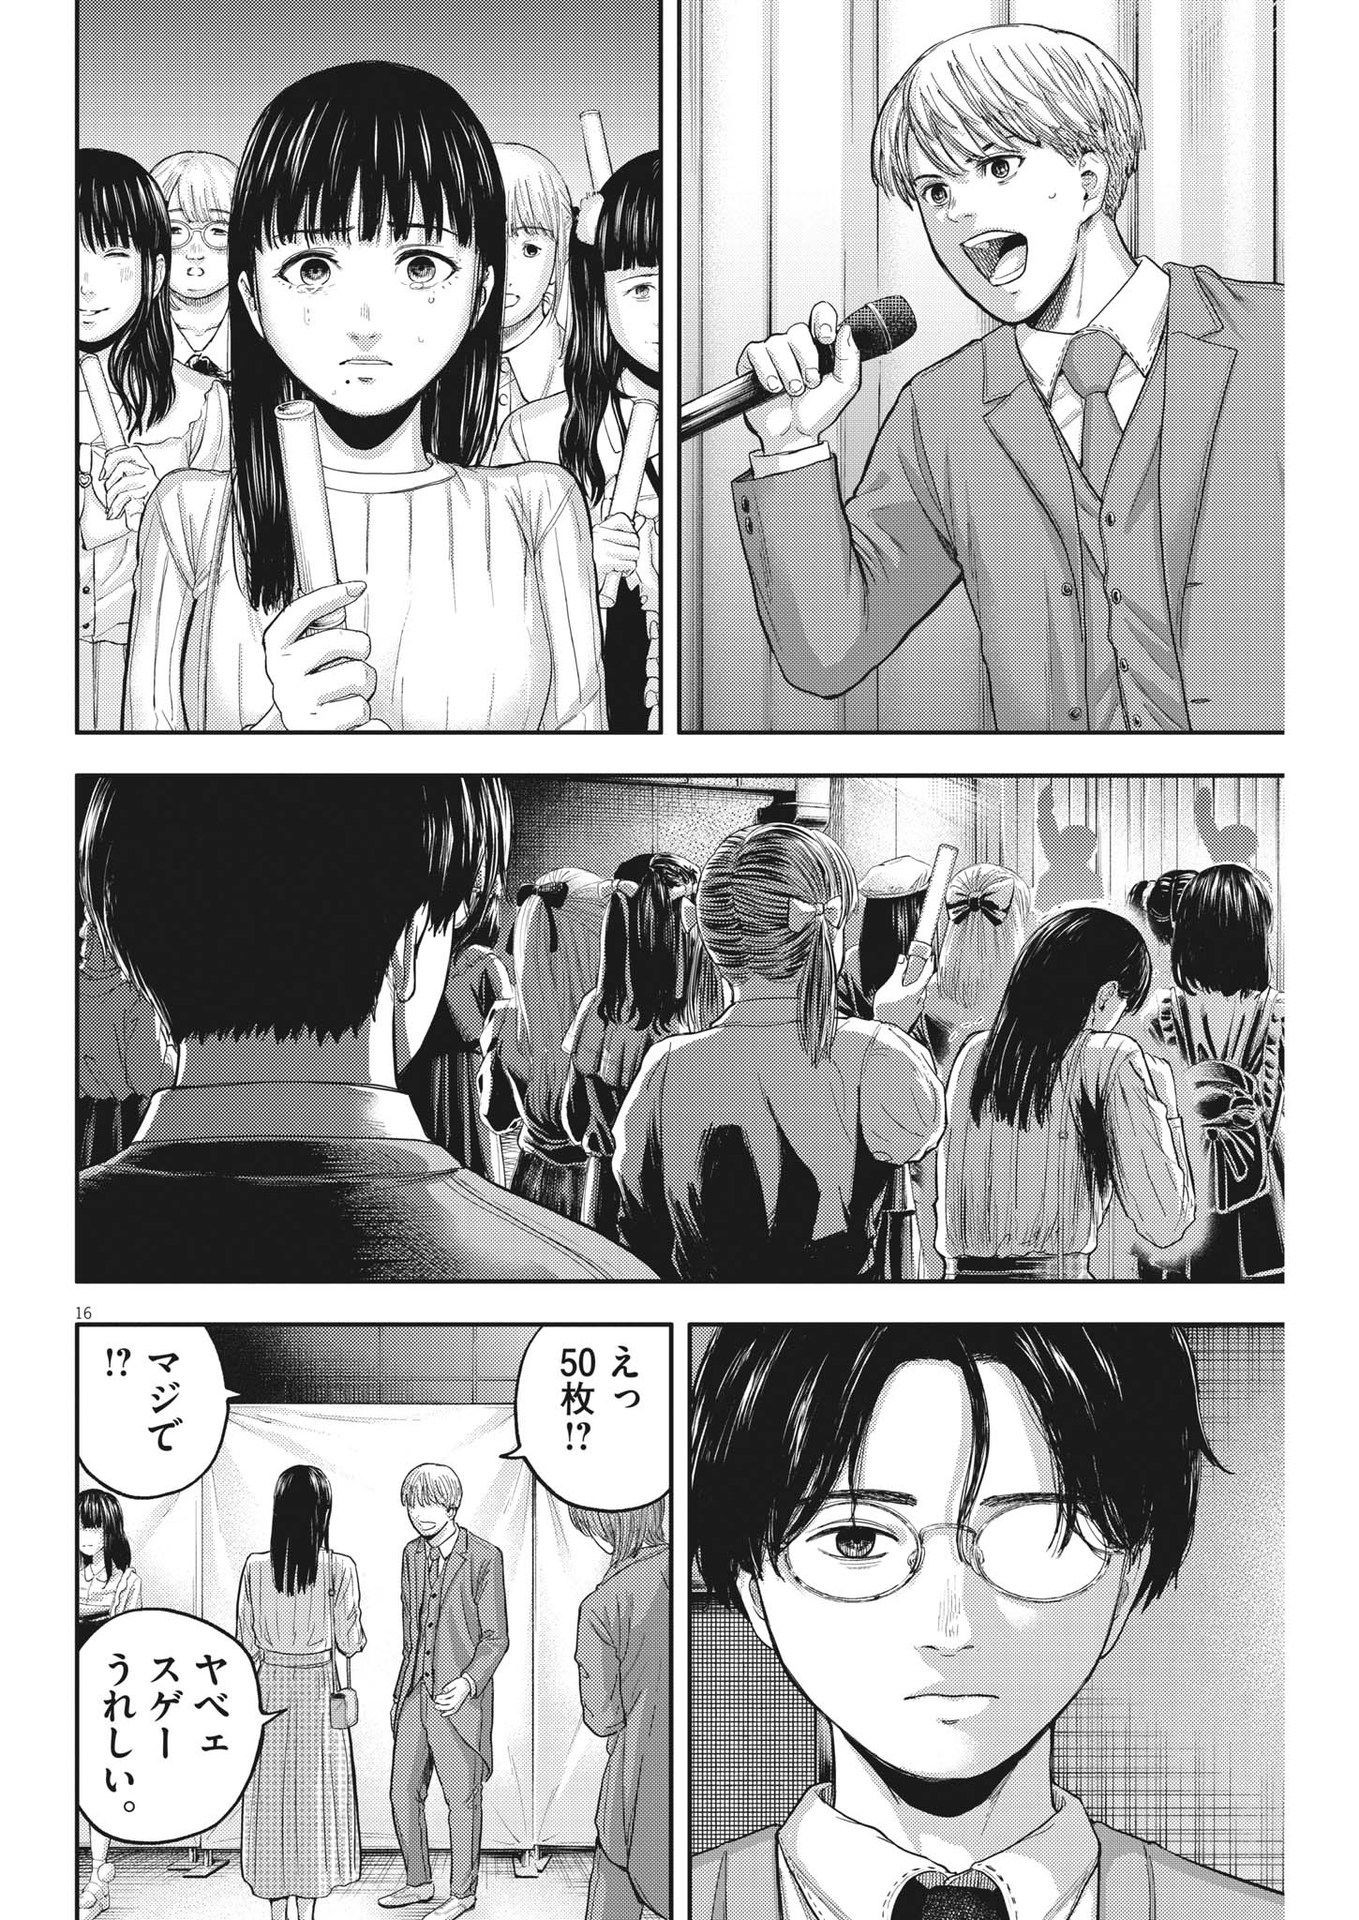 Yumenashi-sensei no Shinroshidou - Chapter 11 - Page 16